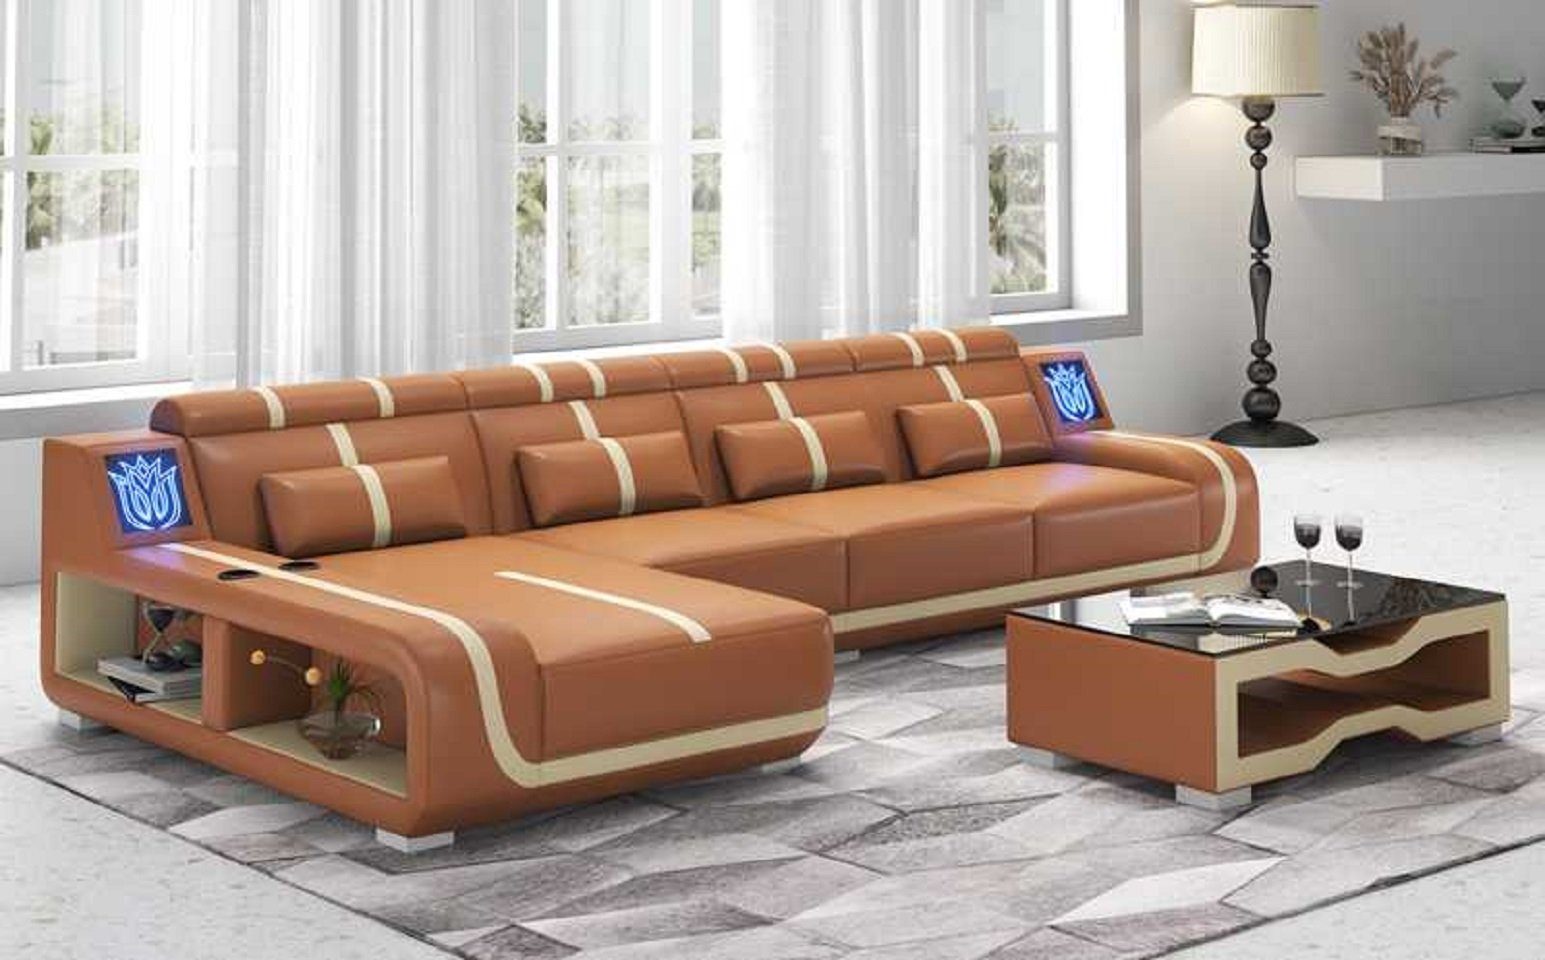 3 Liege Ecksofa L Teile, couchen, Ecksofa Europe Sofa Design in JVmoebel Form Modern Made Braun Couch